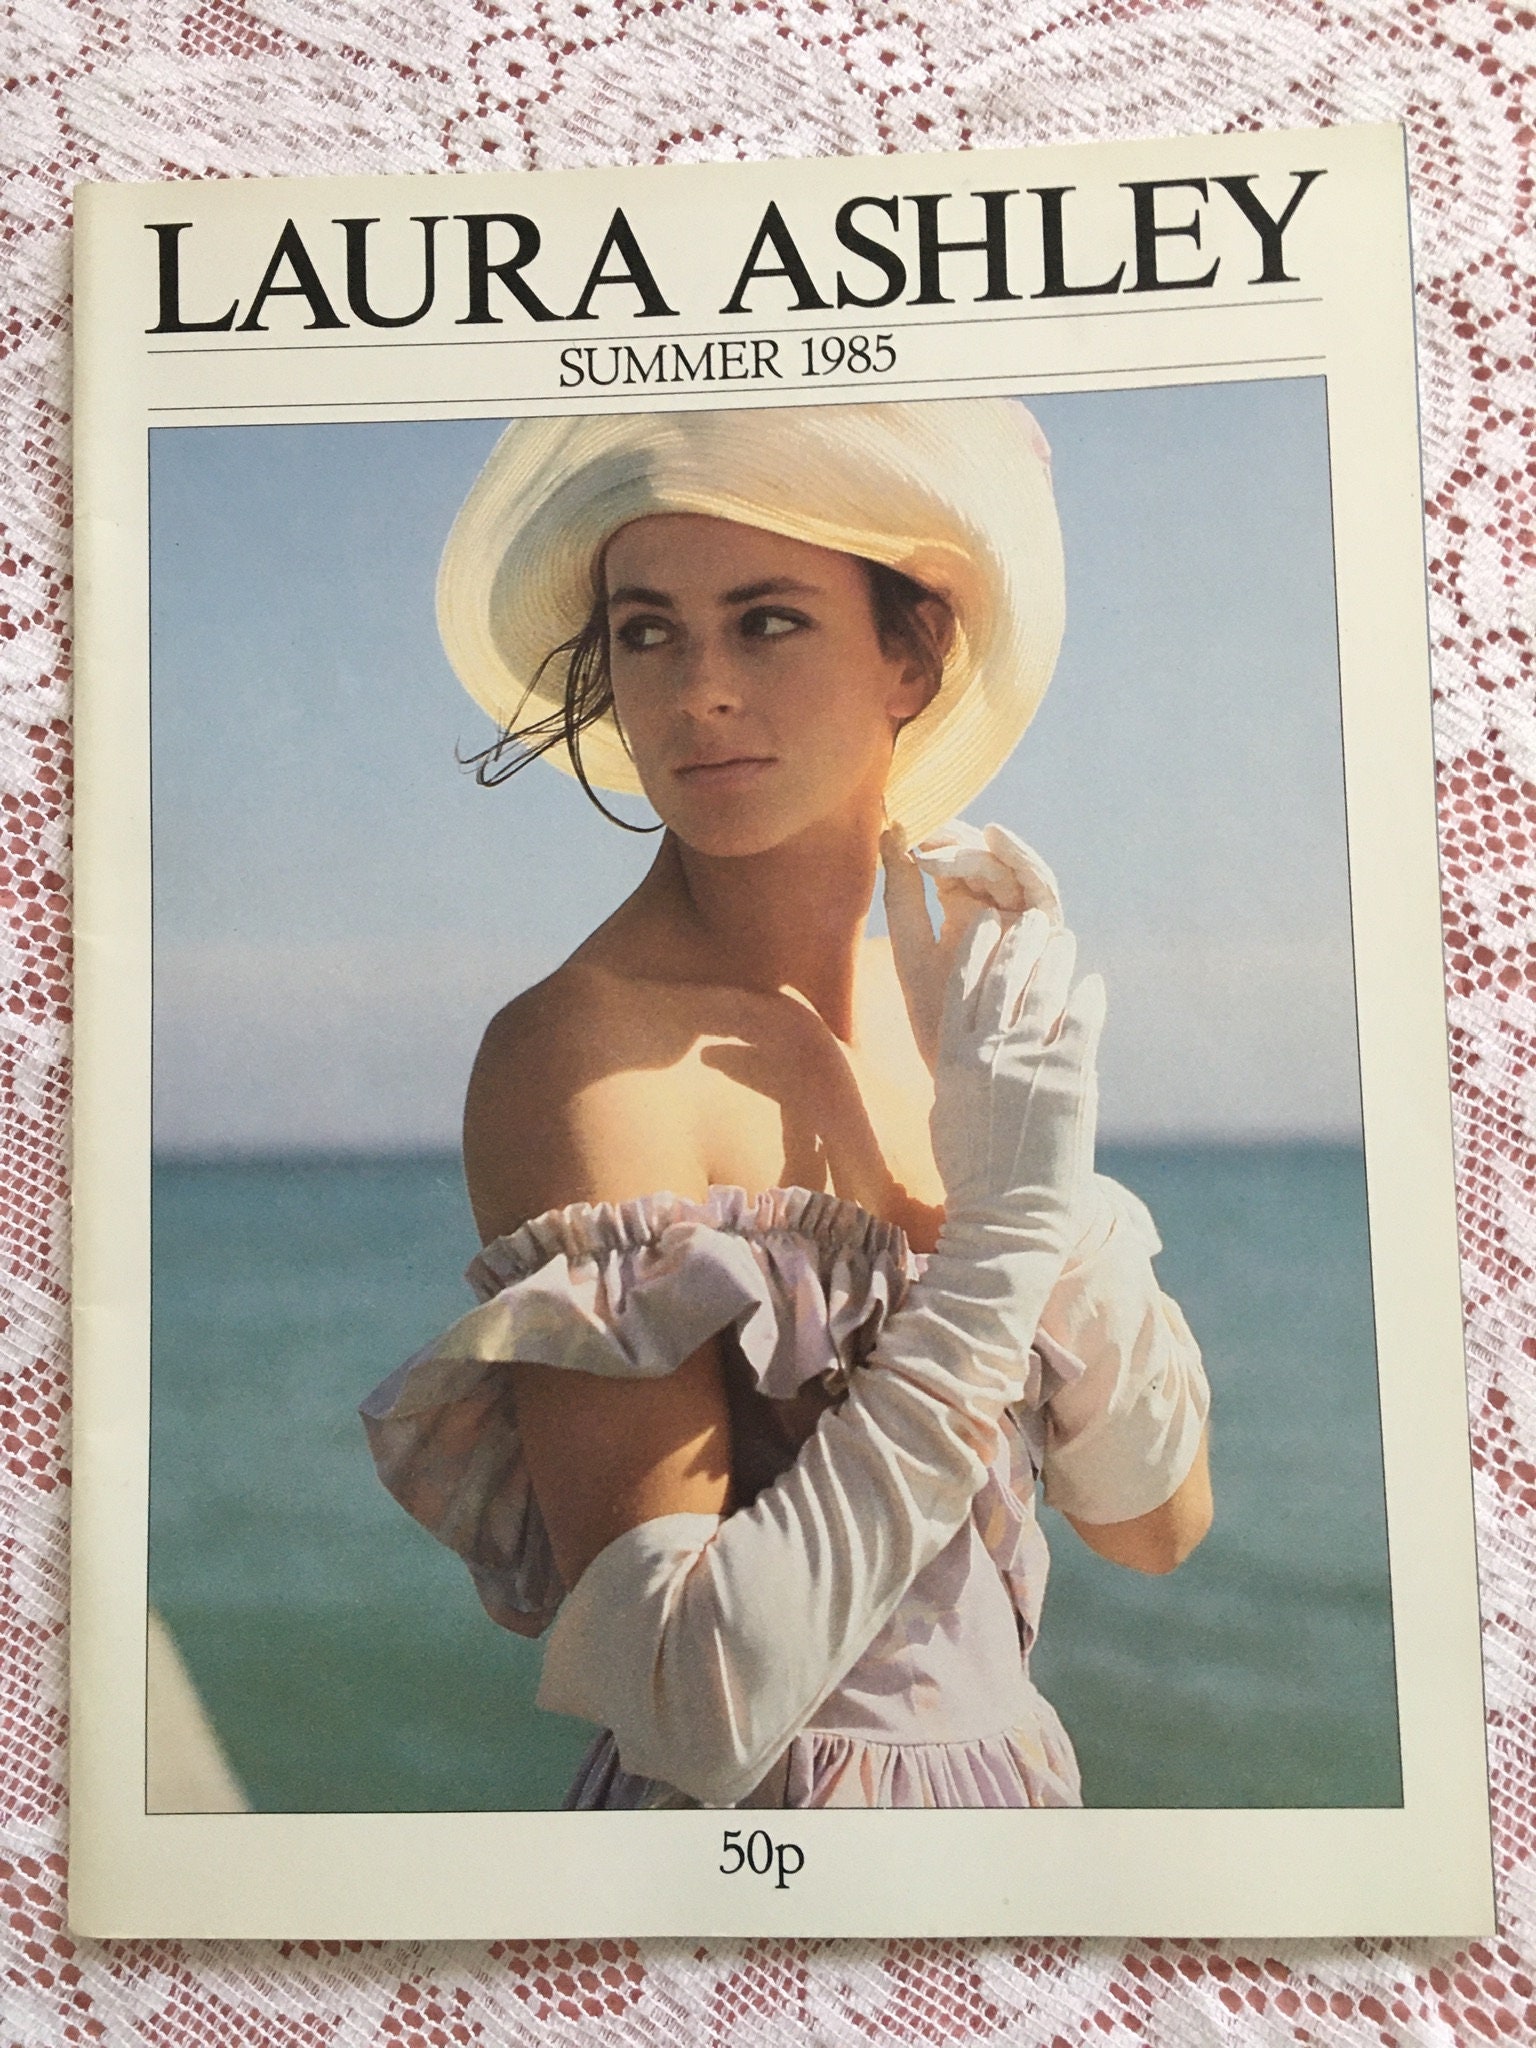 September 17, 1985: Designer Laura Ashley dies